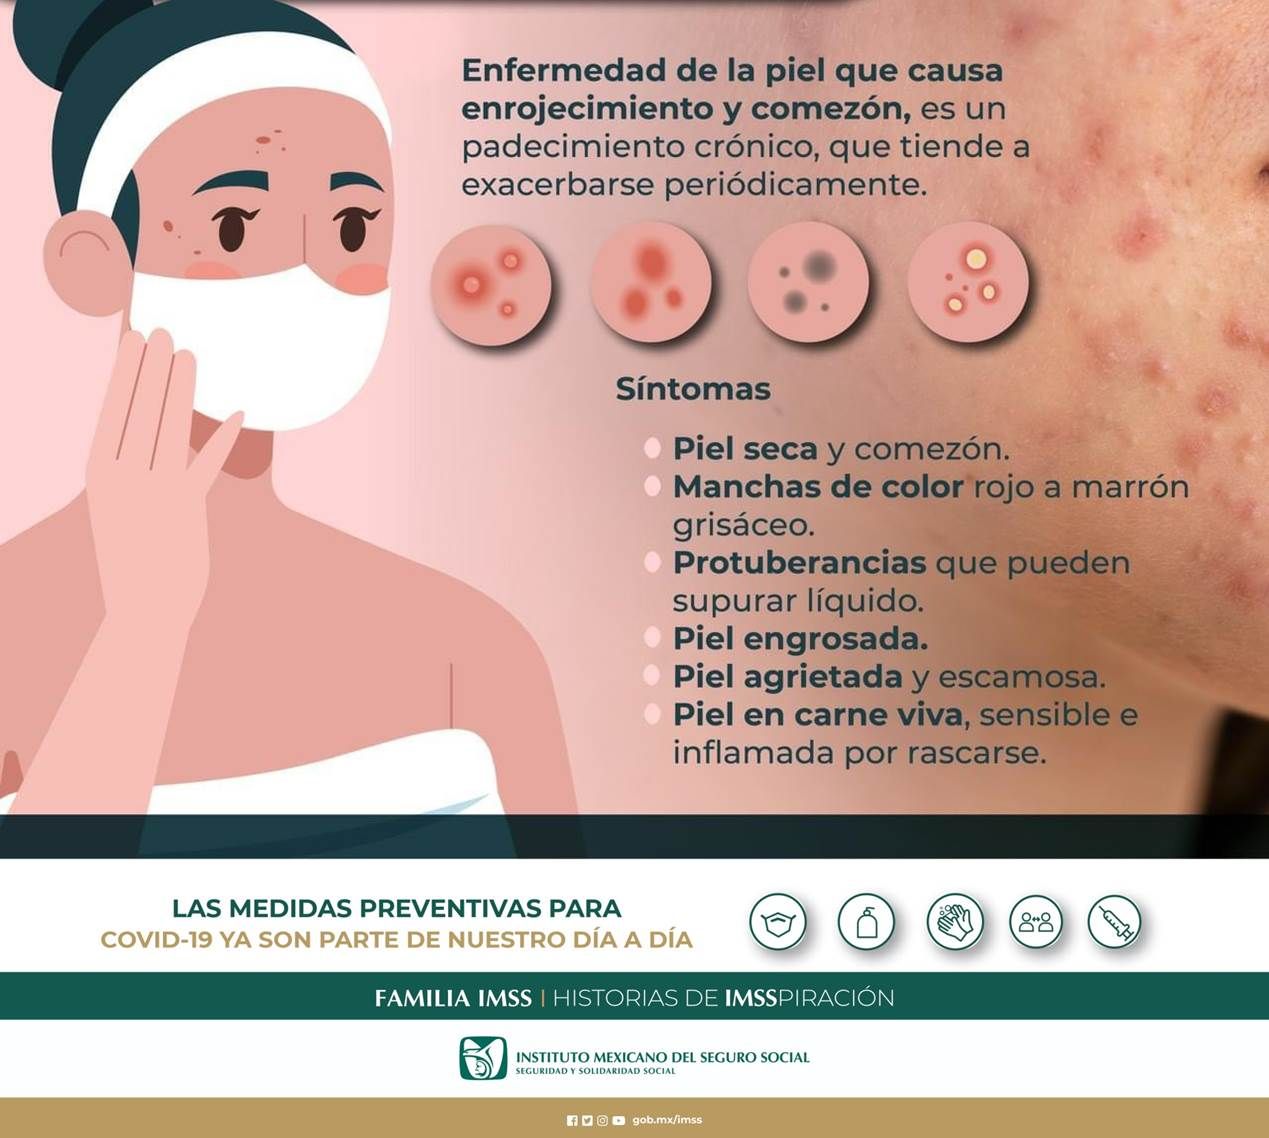 La dermatitis atópica caracterizada por comezón, salpullido e inflamación en la piel